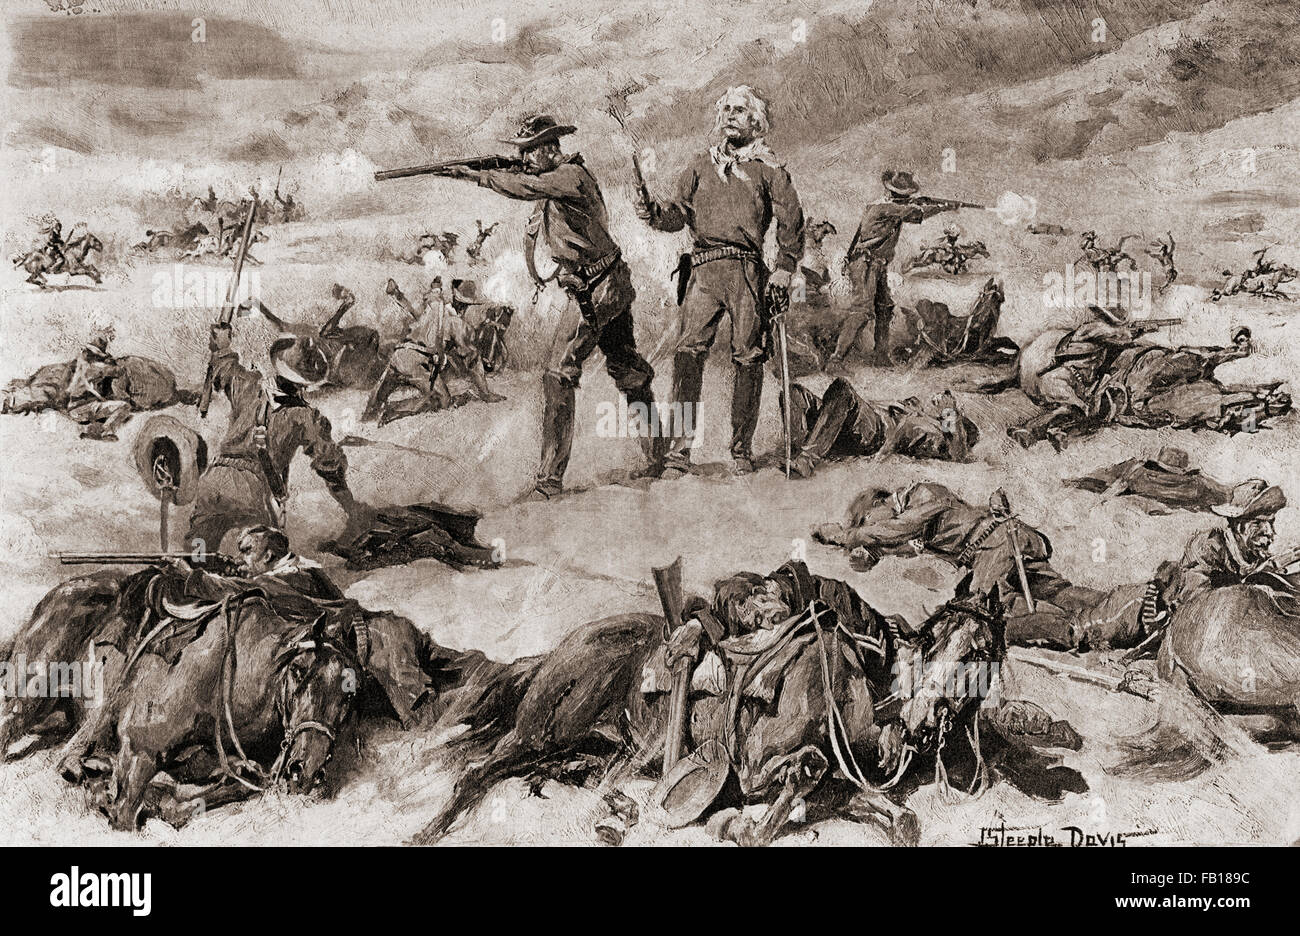 Custer's Last Stand in der Schlacht von Little Bighorn 1876.  George Armstrong Custer, 1839 – 1876.  United States Army Officer und Kavallerie Kommandant in Amerikanischer Bürgerkrieg und die American Indian Wars. Stockfoto